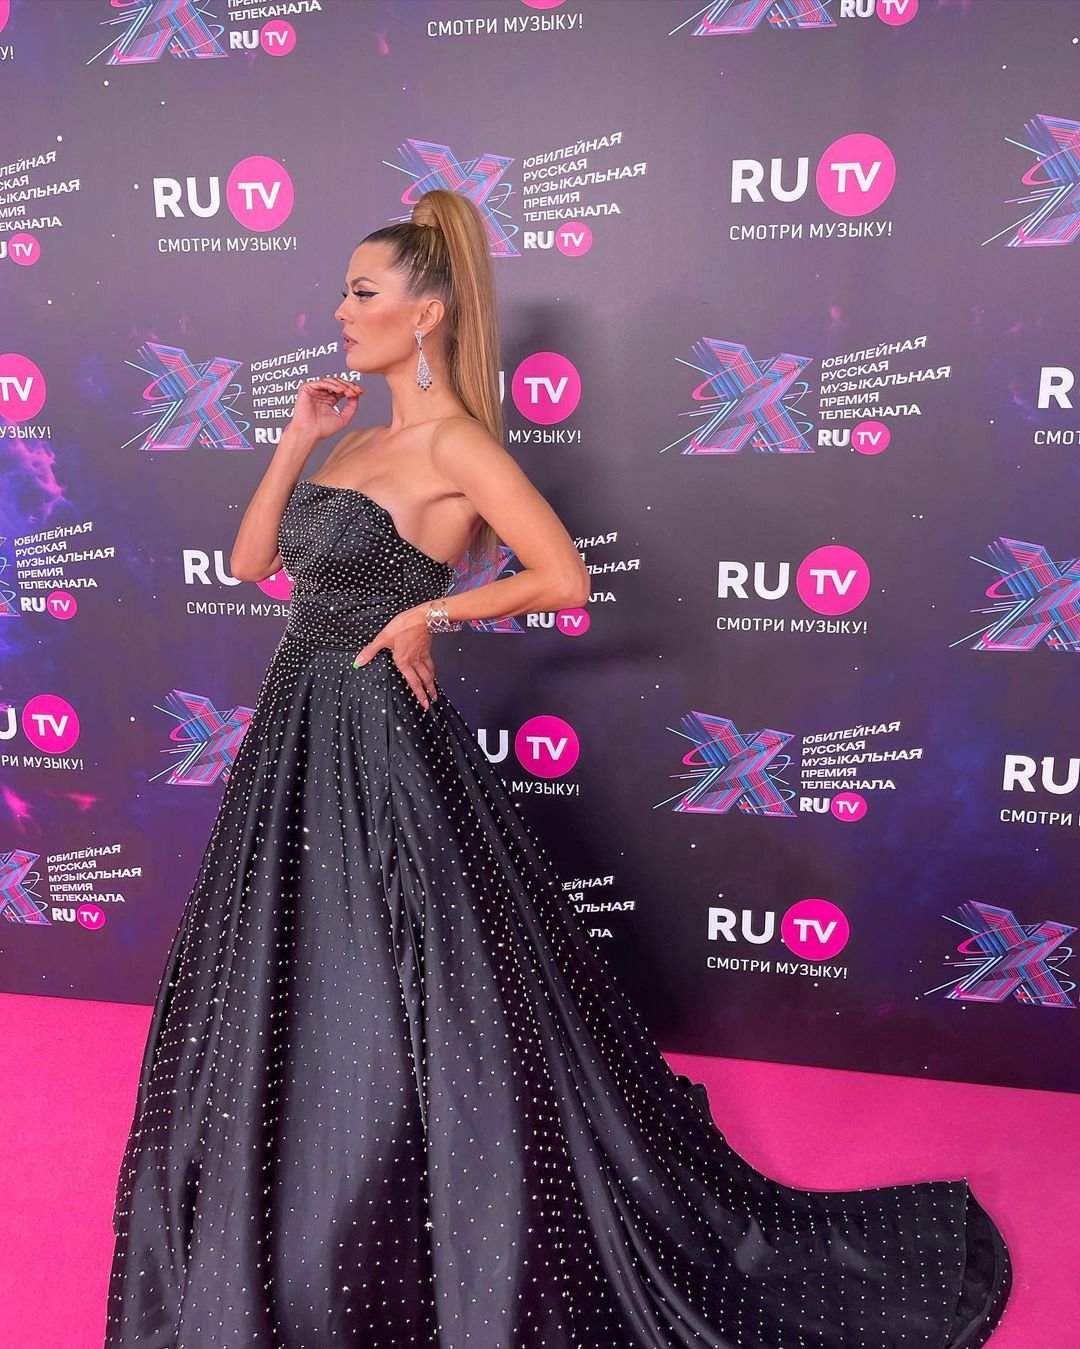 Виктория Боня на премию "Ру-тв" выбрала чёрное платье со стразами